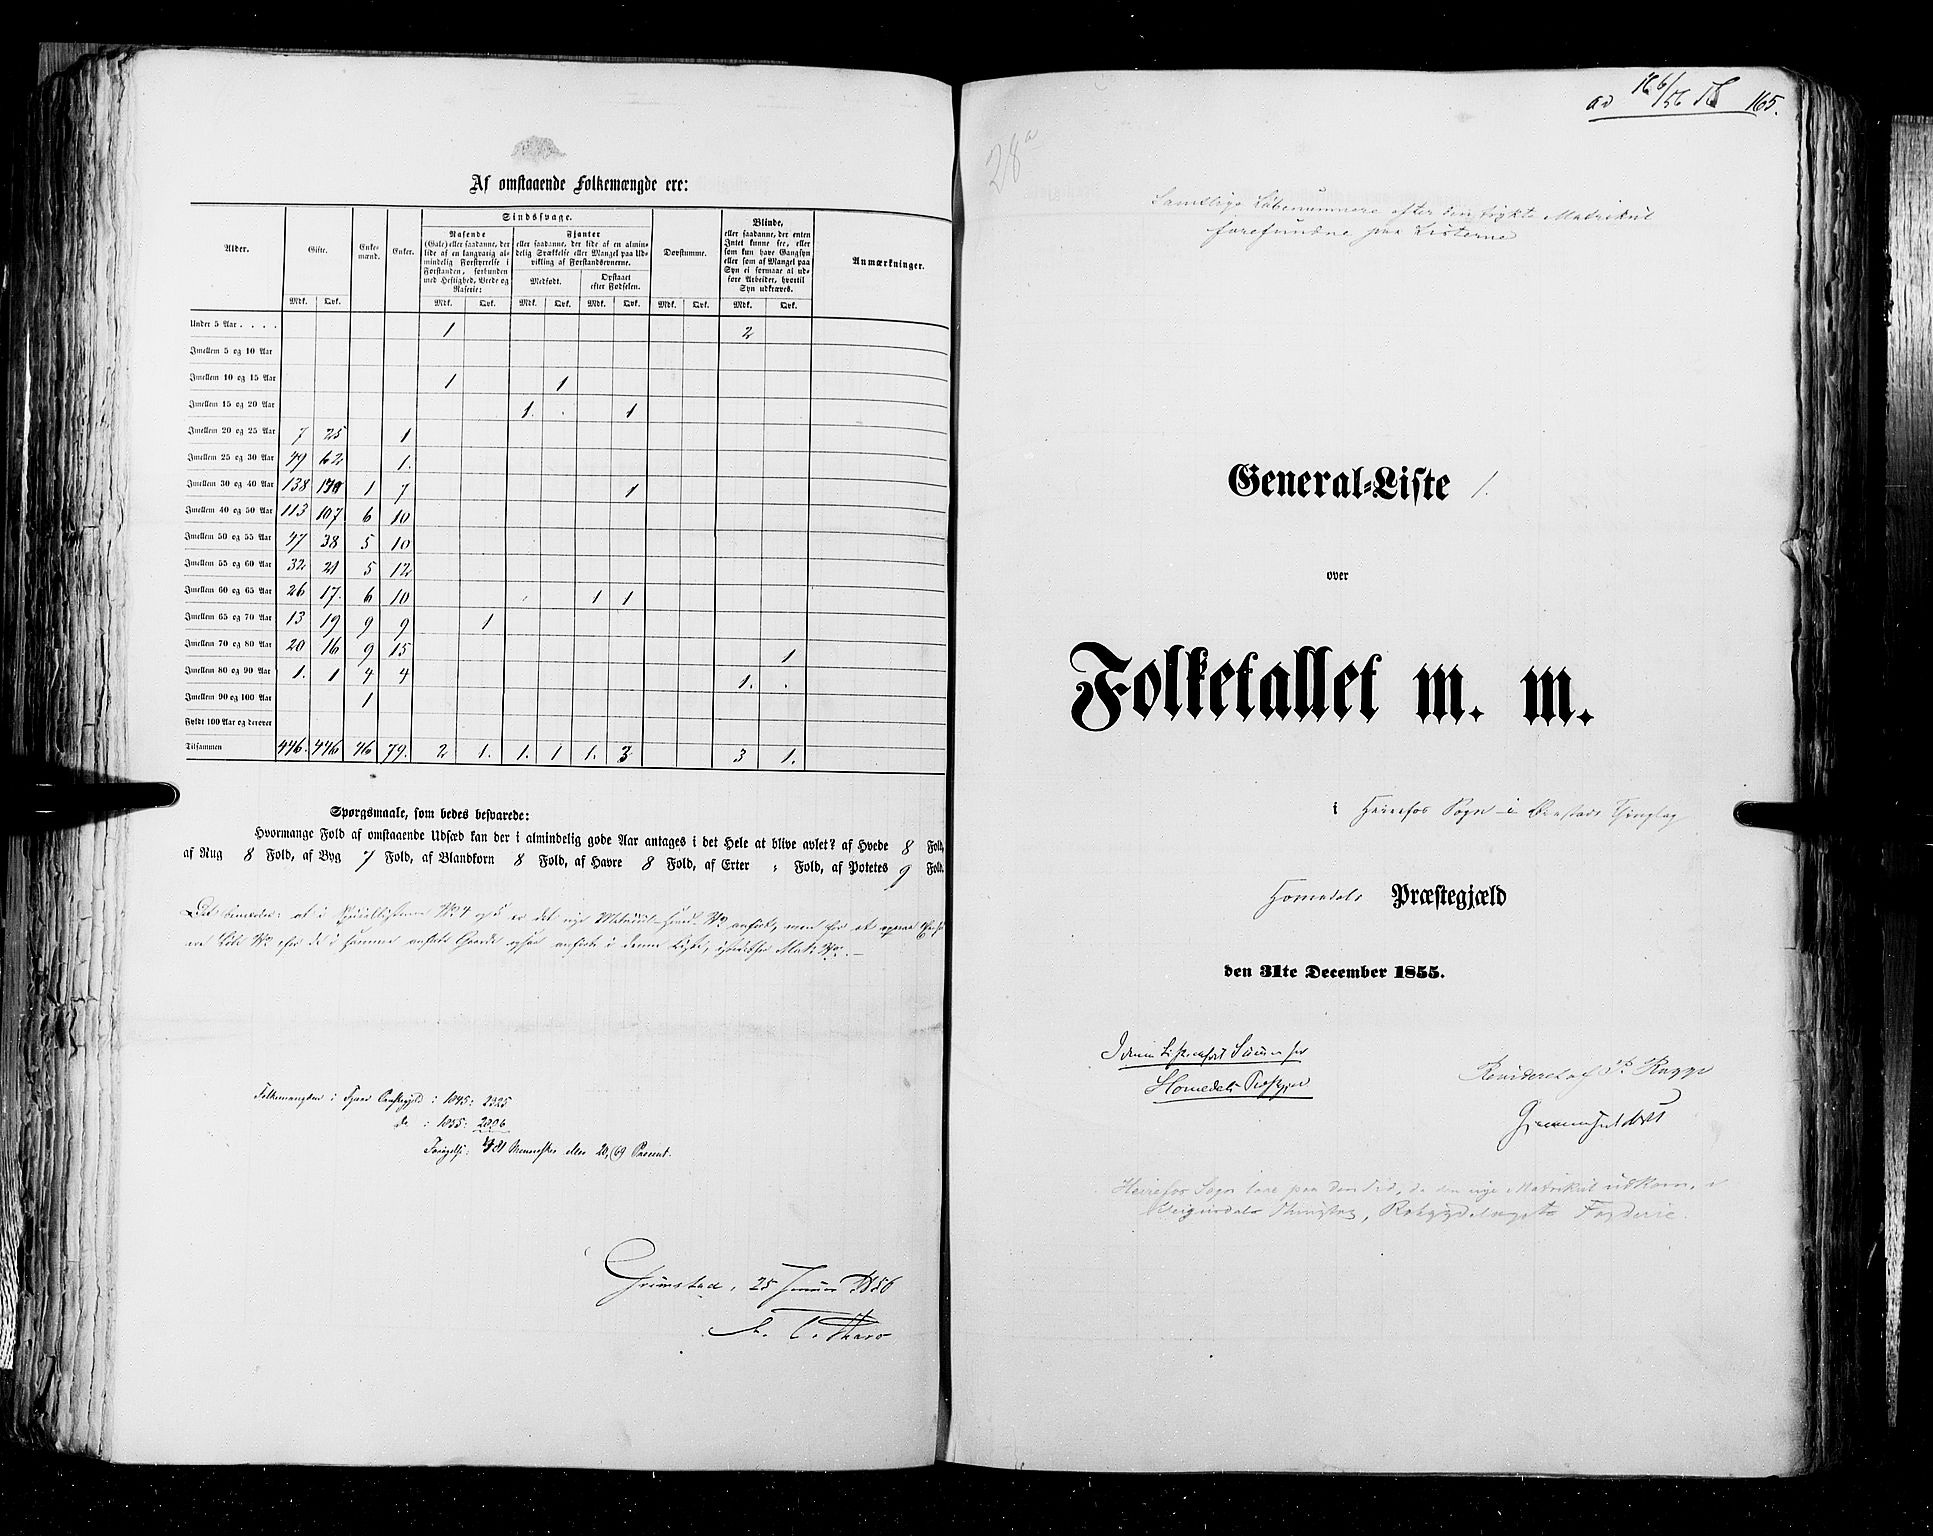 RA, Census 1855, vol. 3: Bratsberg amt, Nedenes amt og Lister og Mandal amt, 1855, p. 165